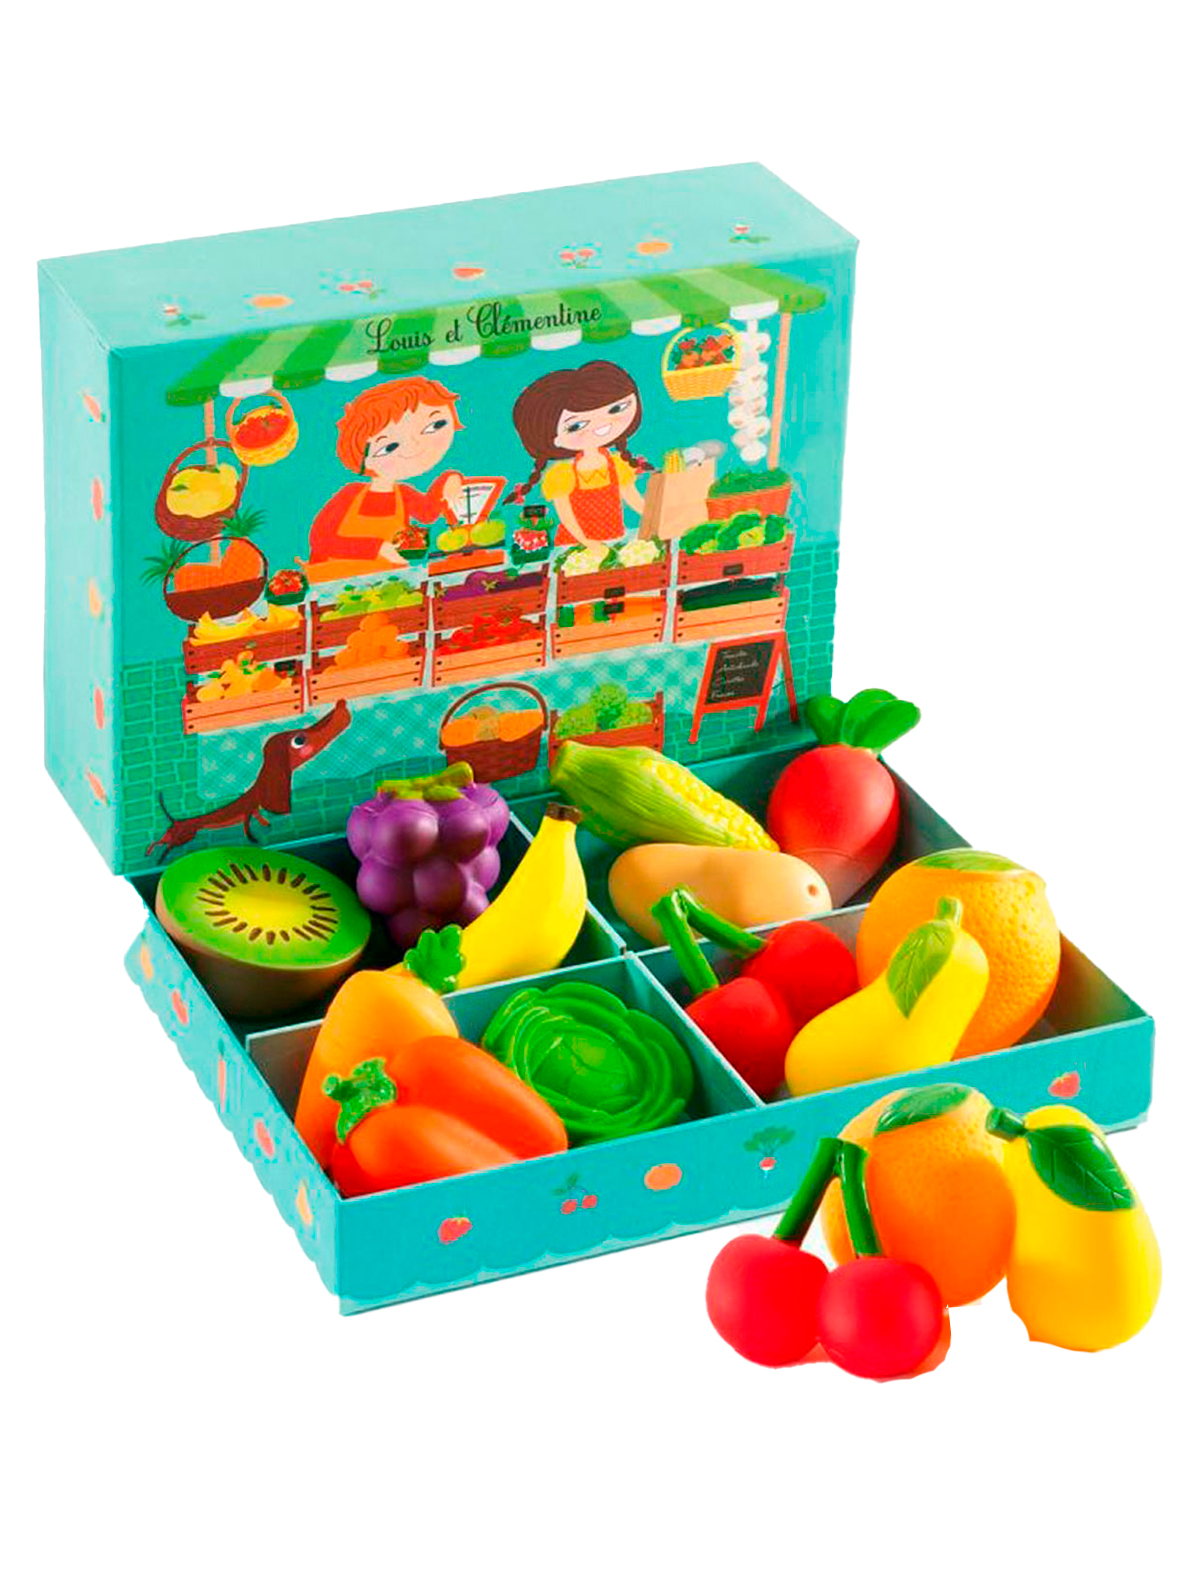 Набор детских продуктов. Набор продуктов Djeco овощная Лавка 06621. Джеко набор барбекю. Набор игр Джеко. Набор овощей и фруктов для детей.